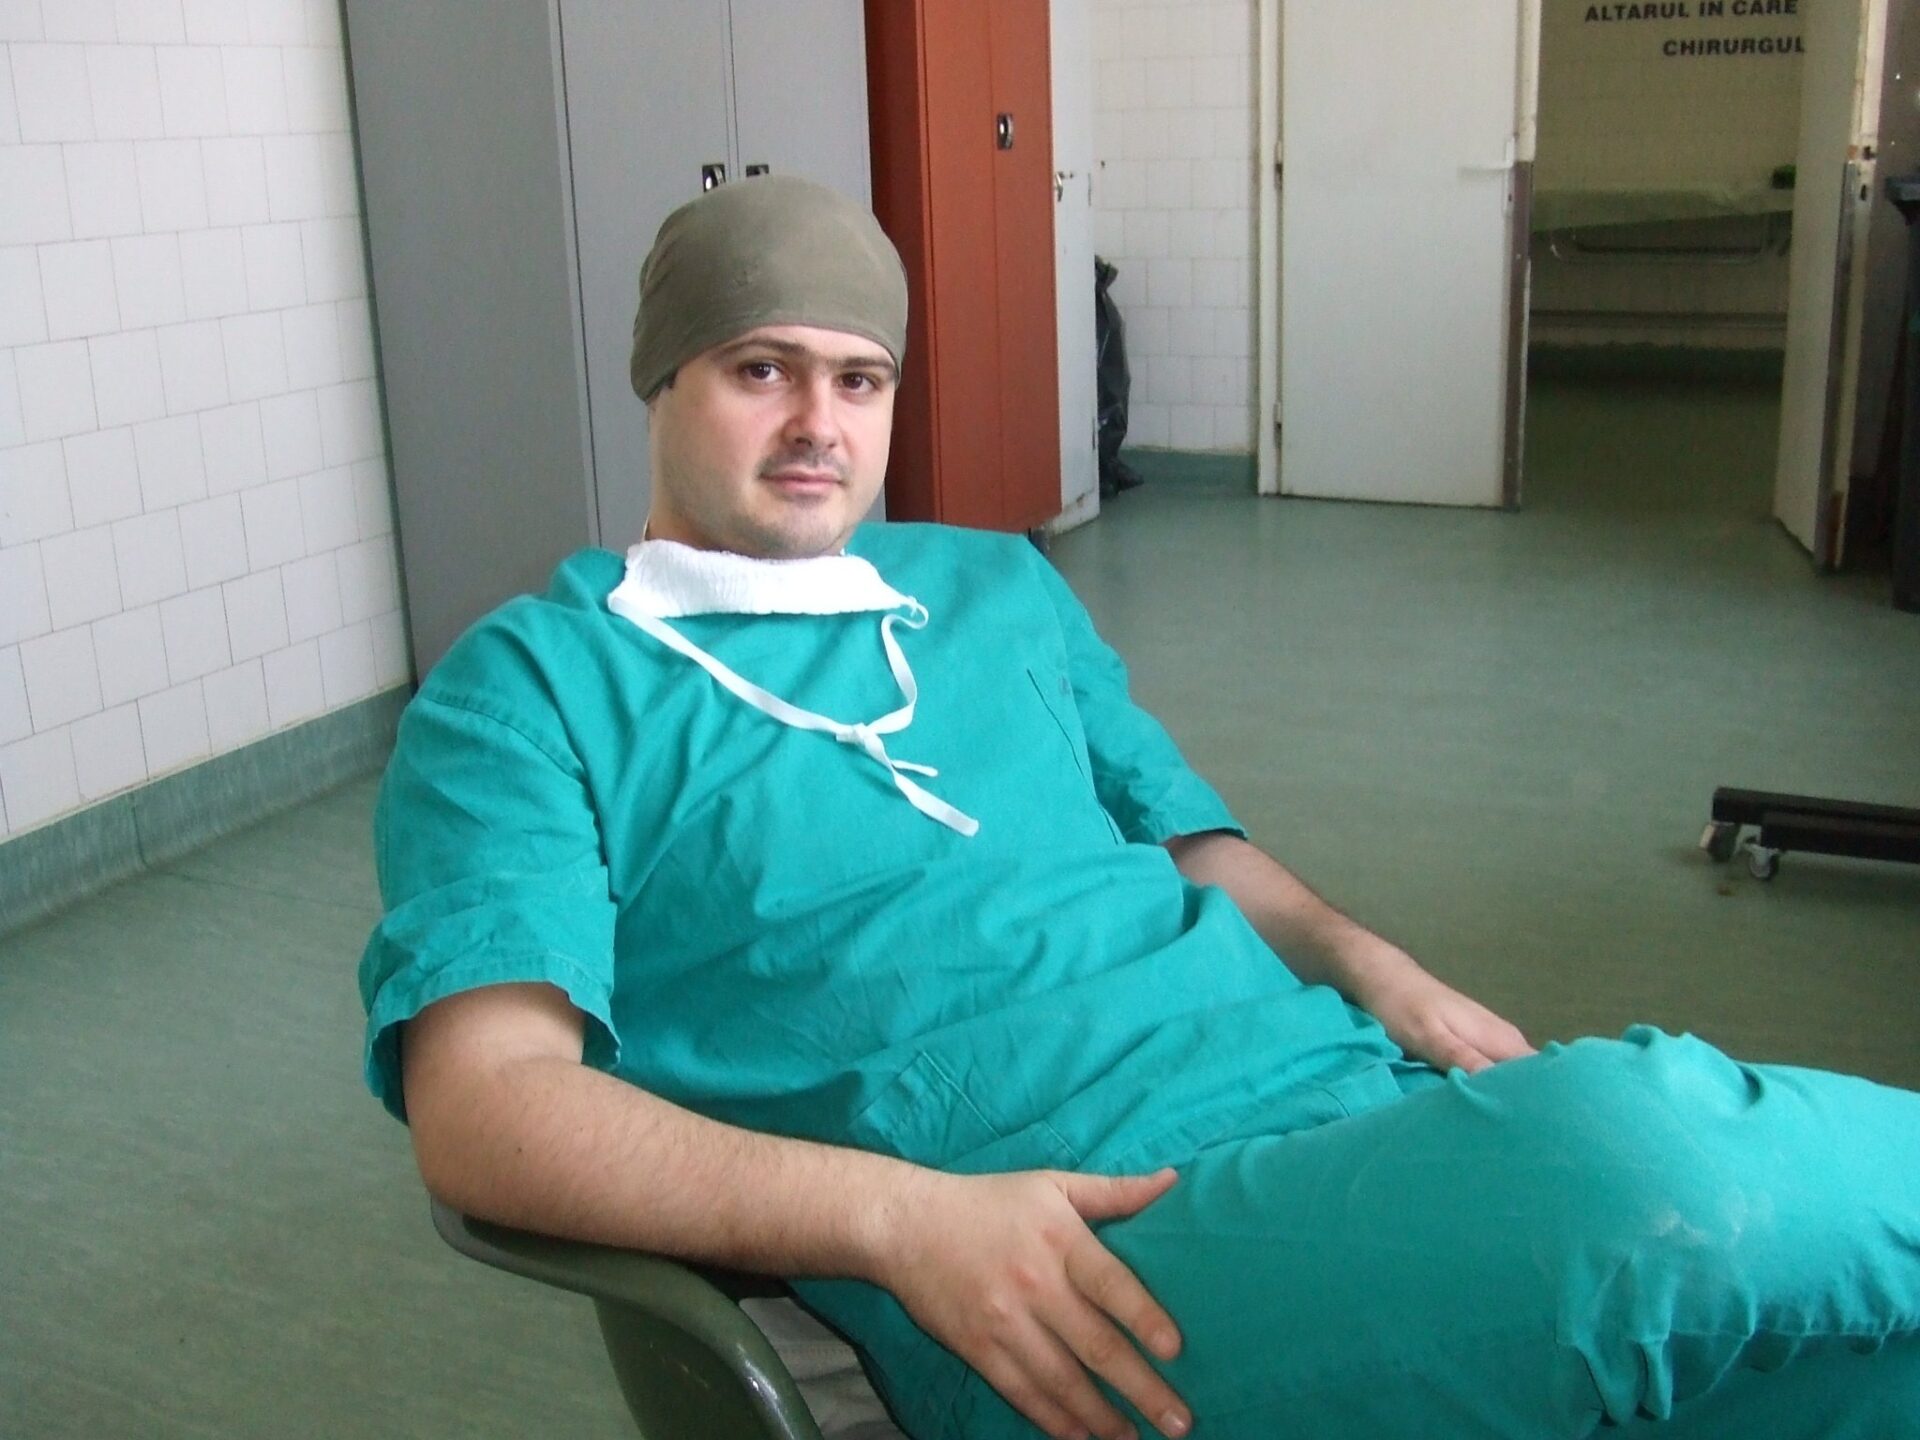 Chirurgul Răzvan Tîrziu